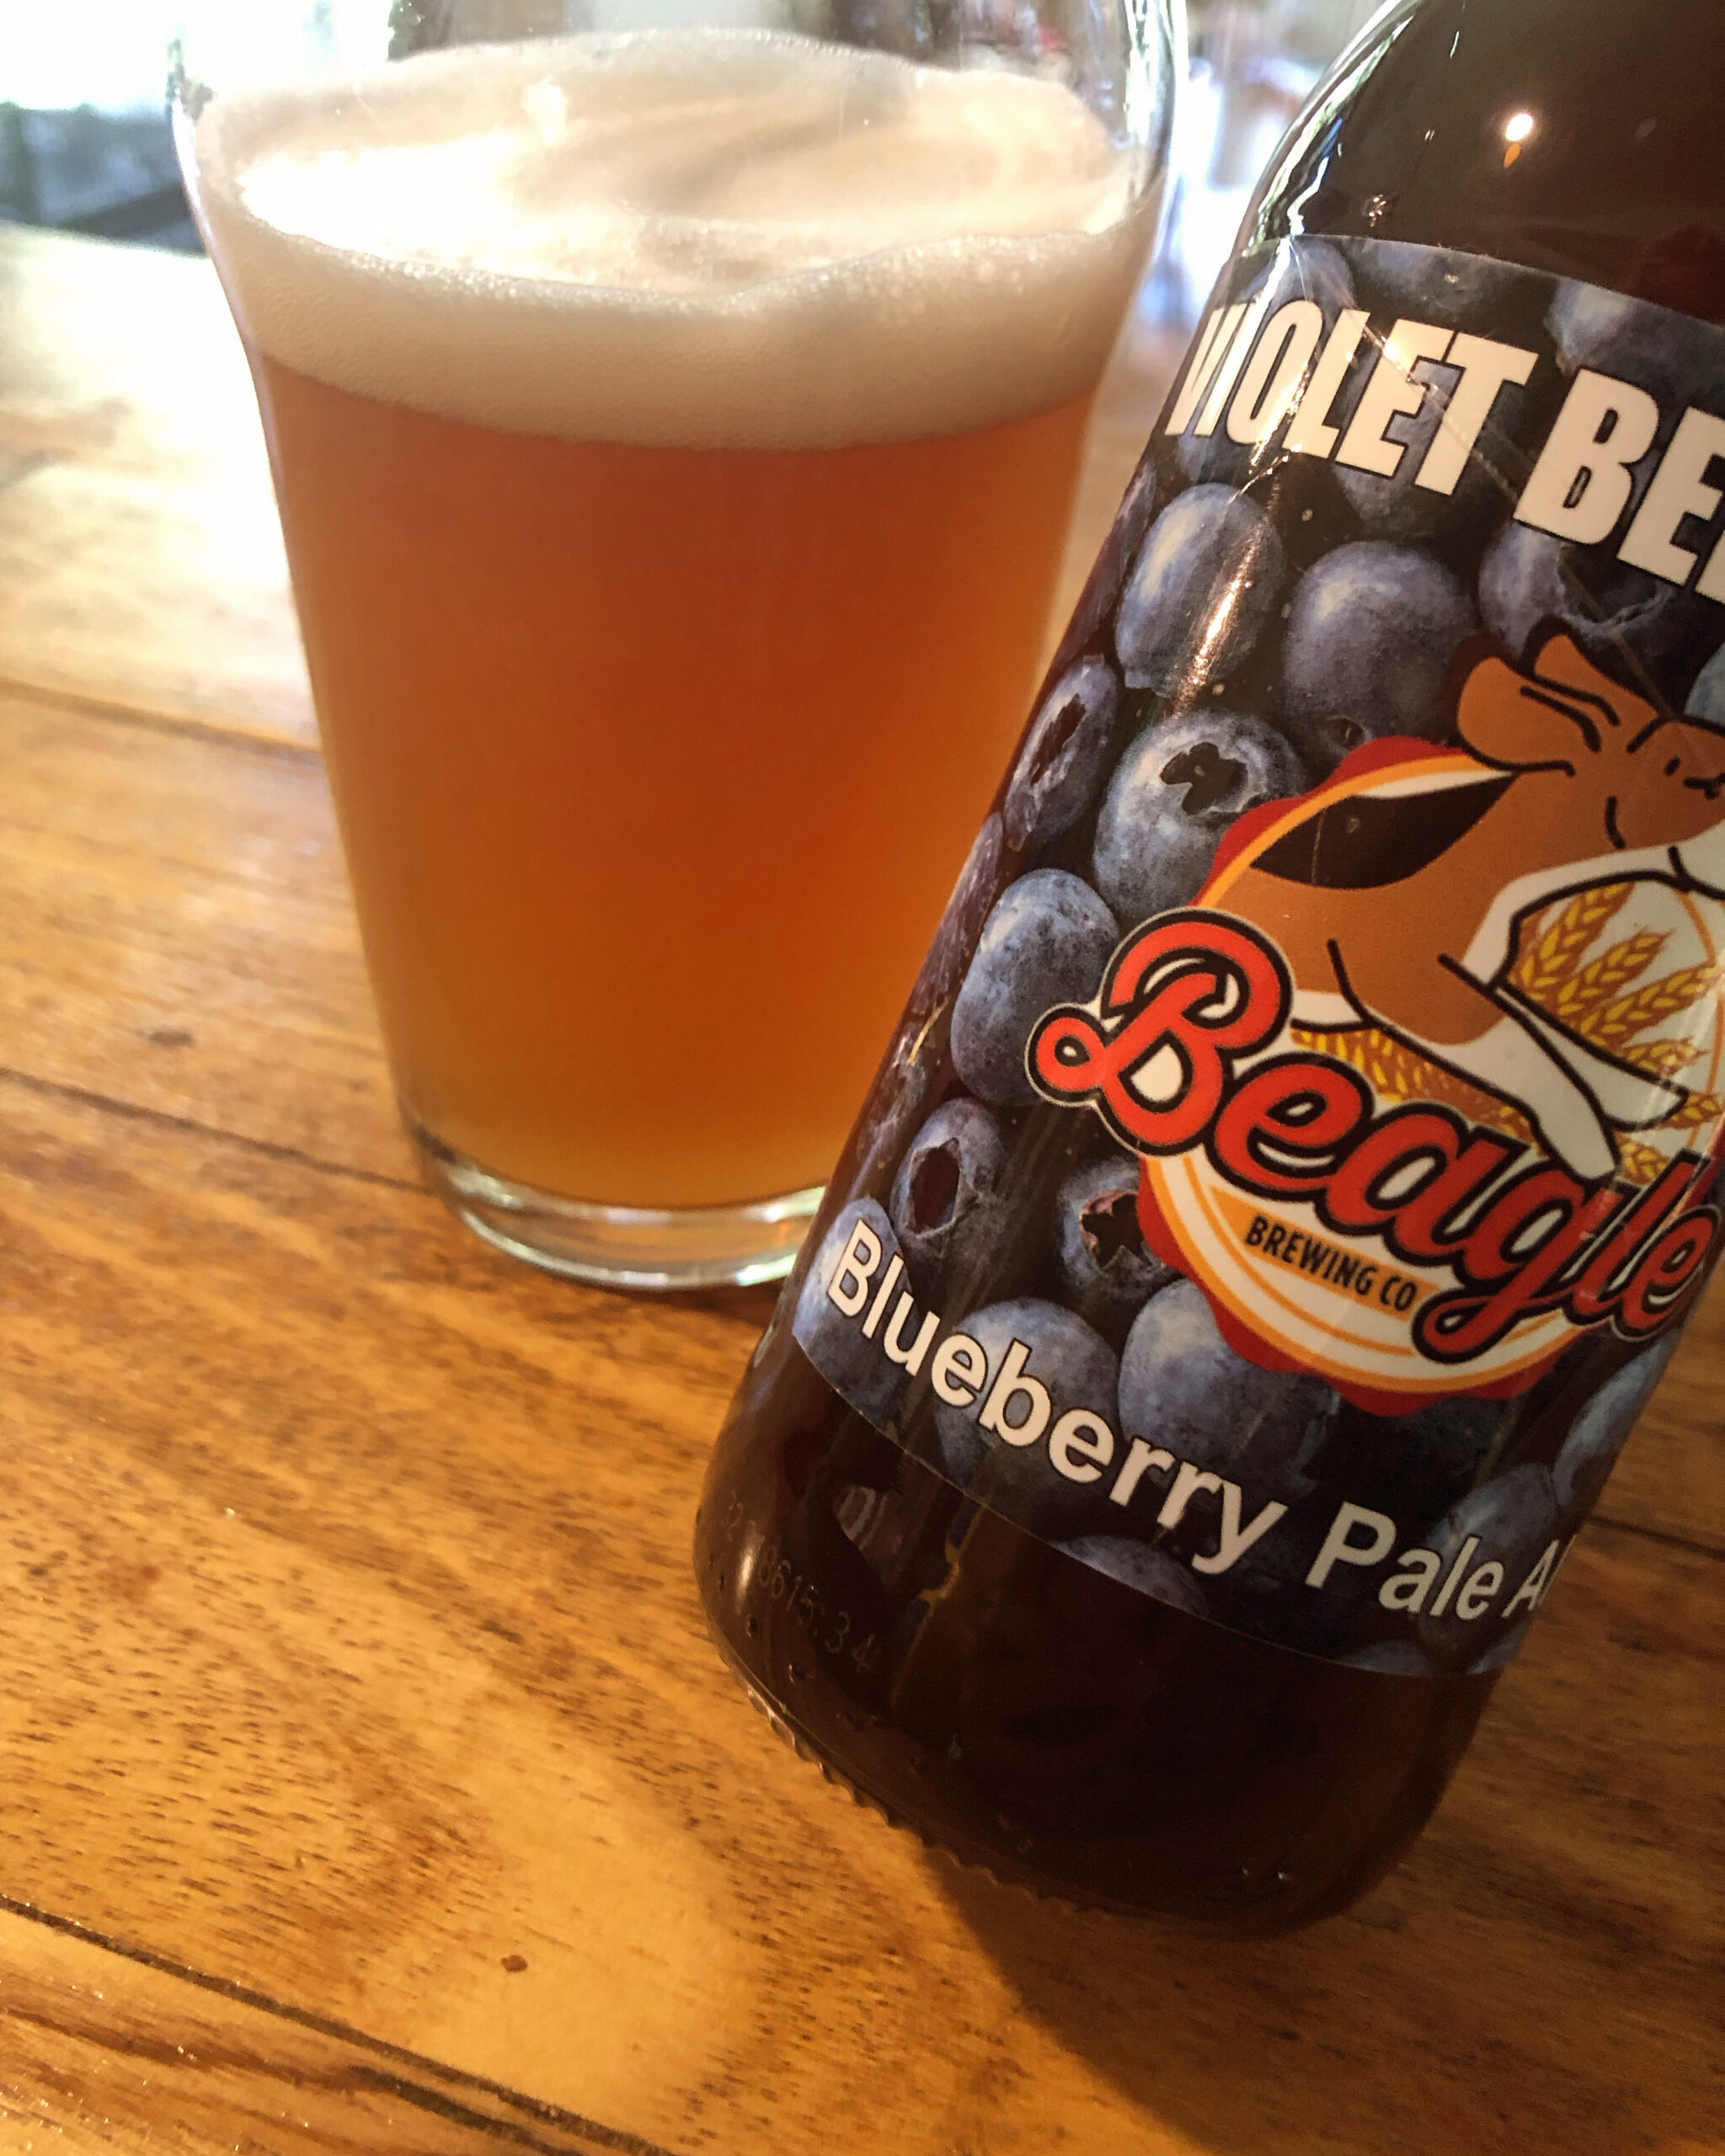 Violet Beeregarde hoppy pale ale brewed from blueberries